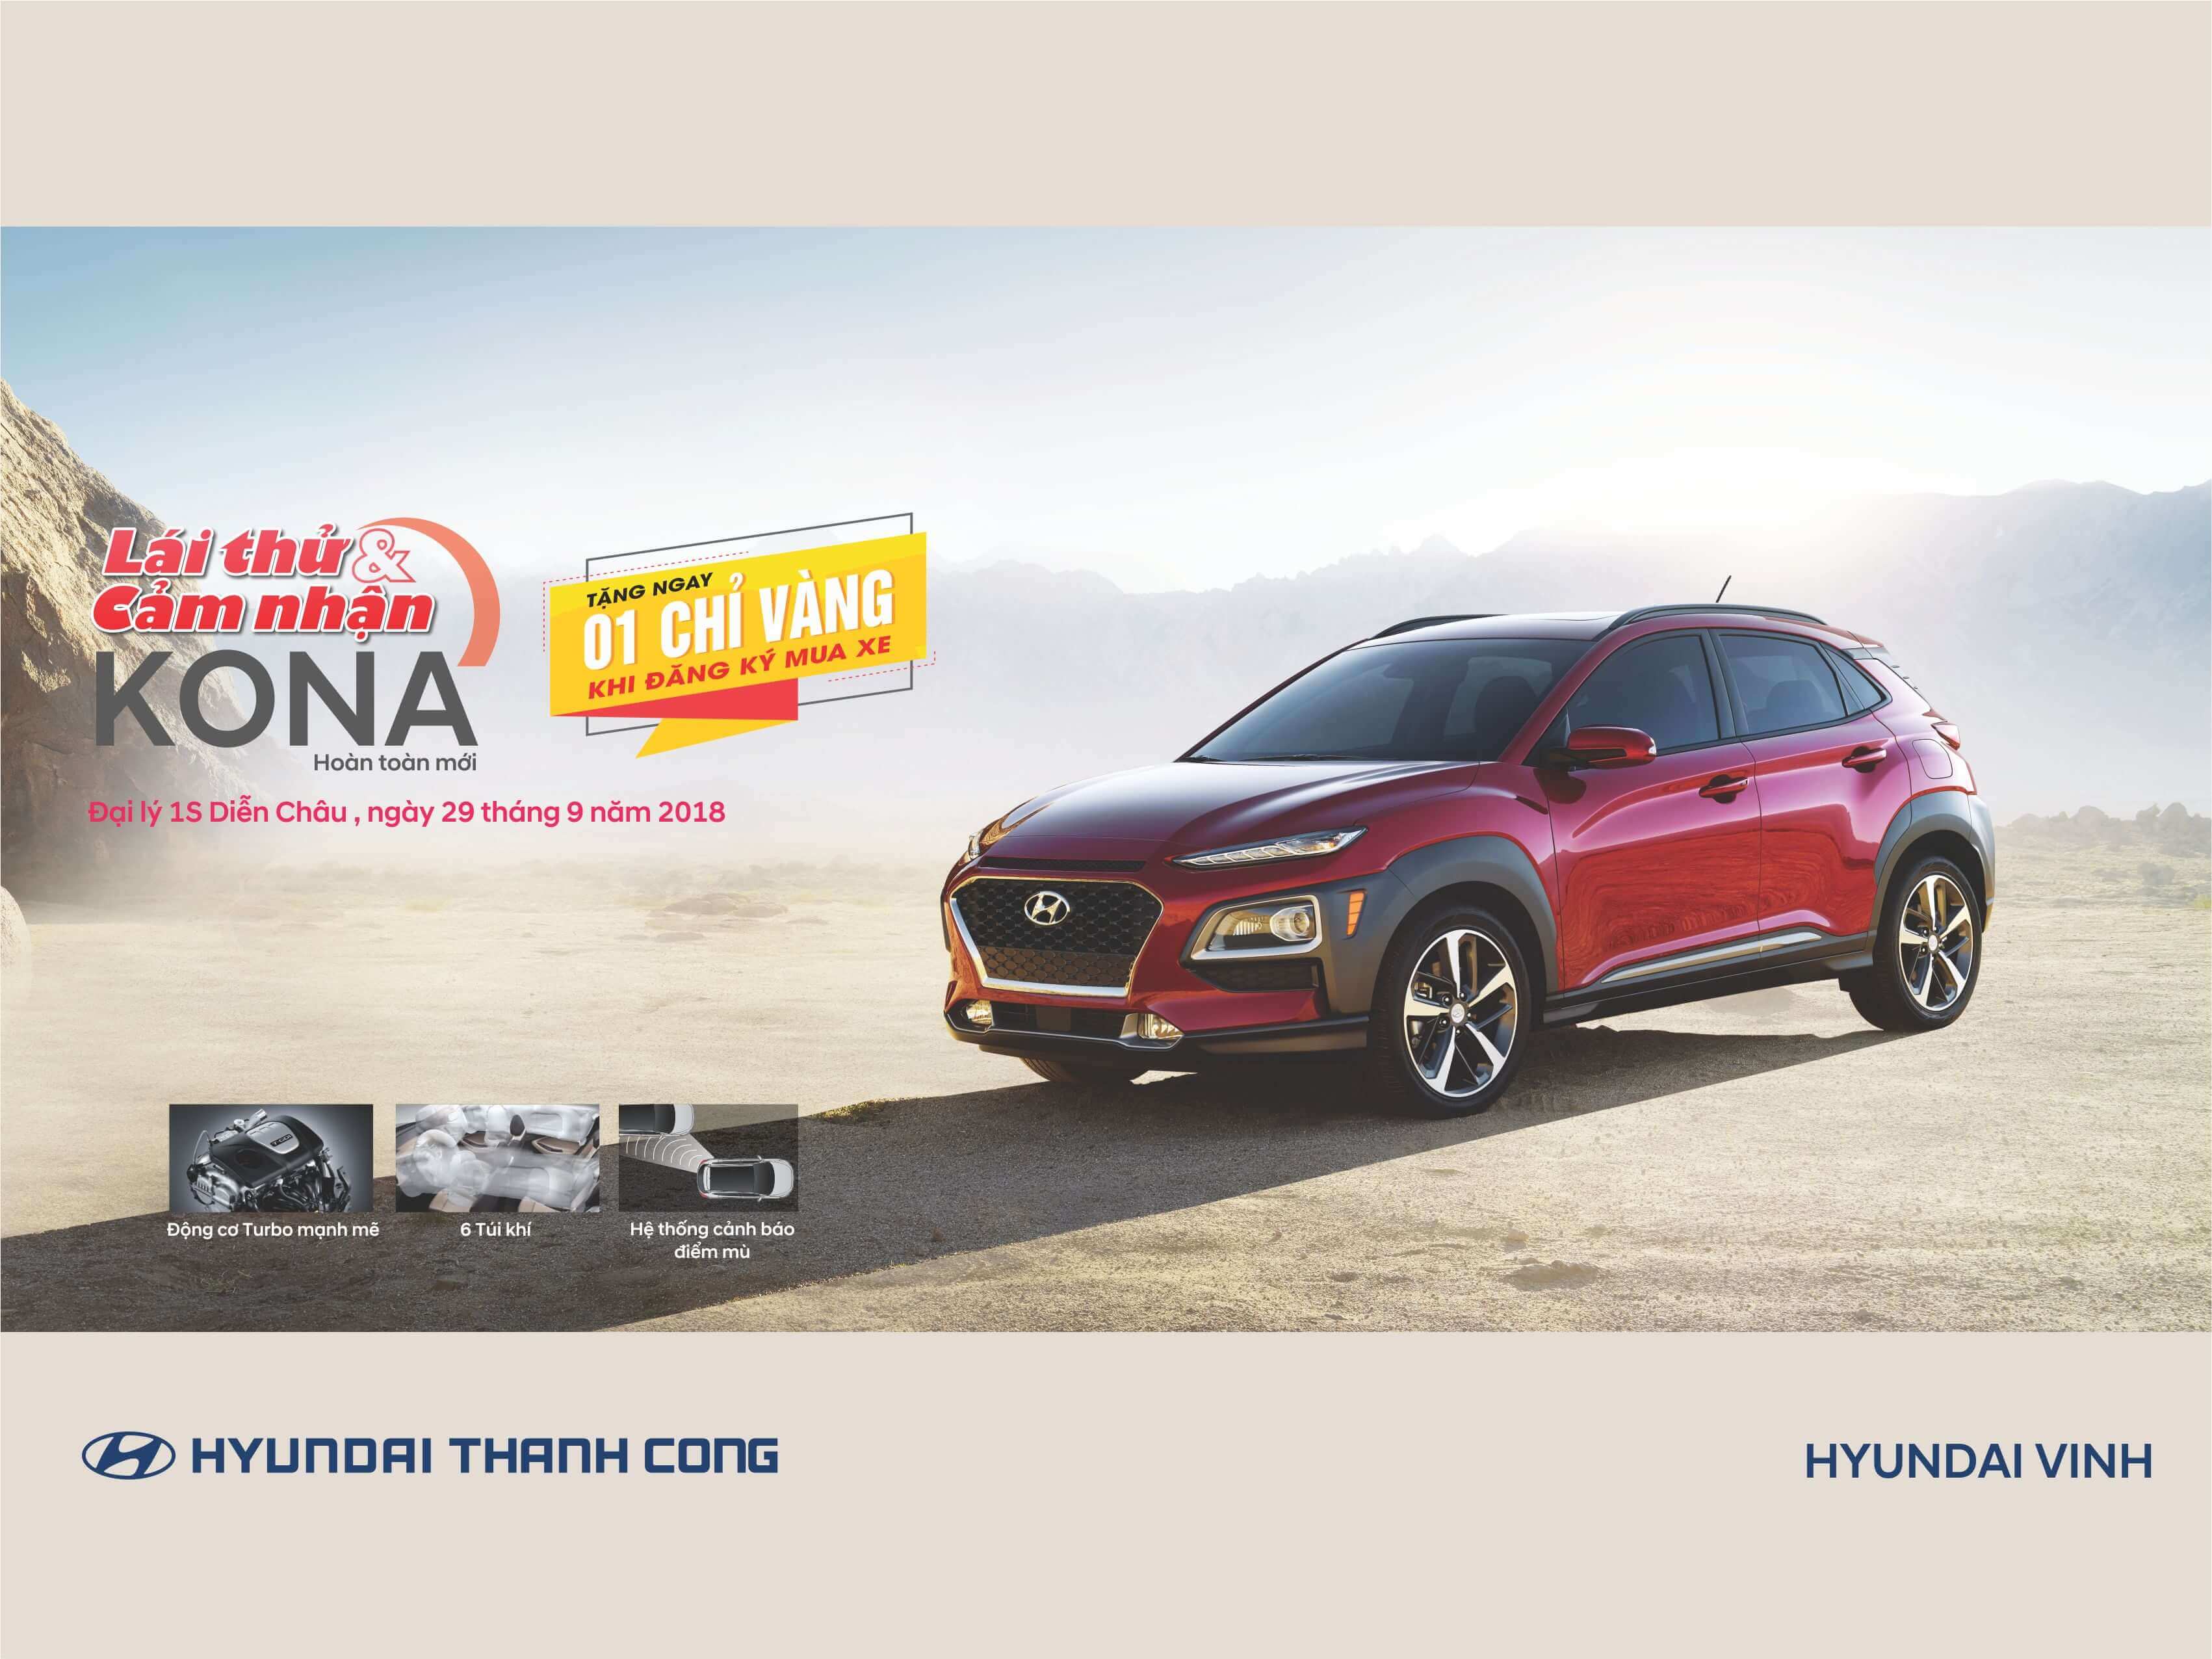 Hyundai Kona Đã có mặt tại Hyundai Vinh – Chi Nhánh 1S Diễn Châu